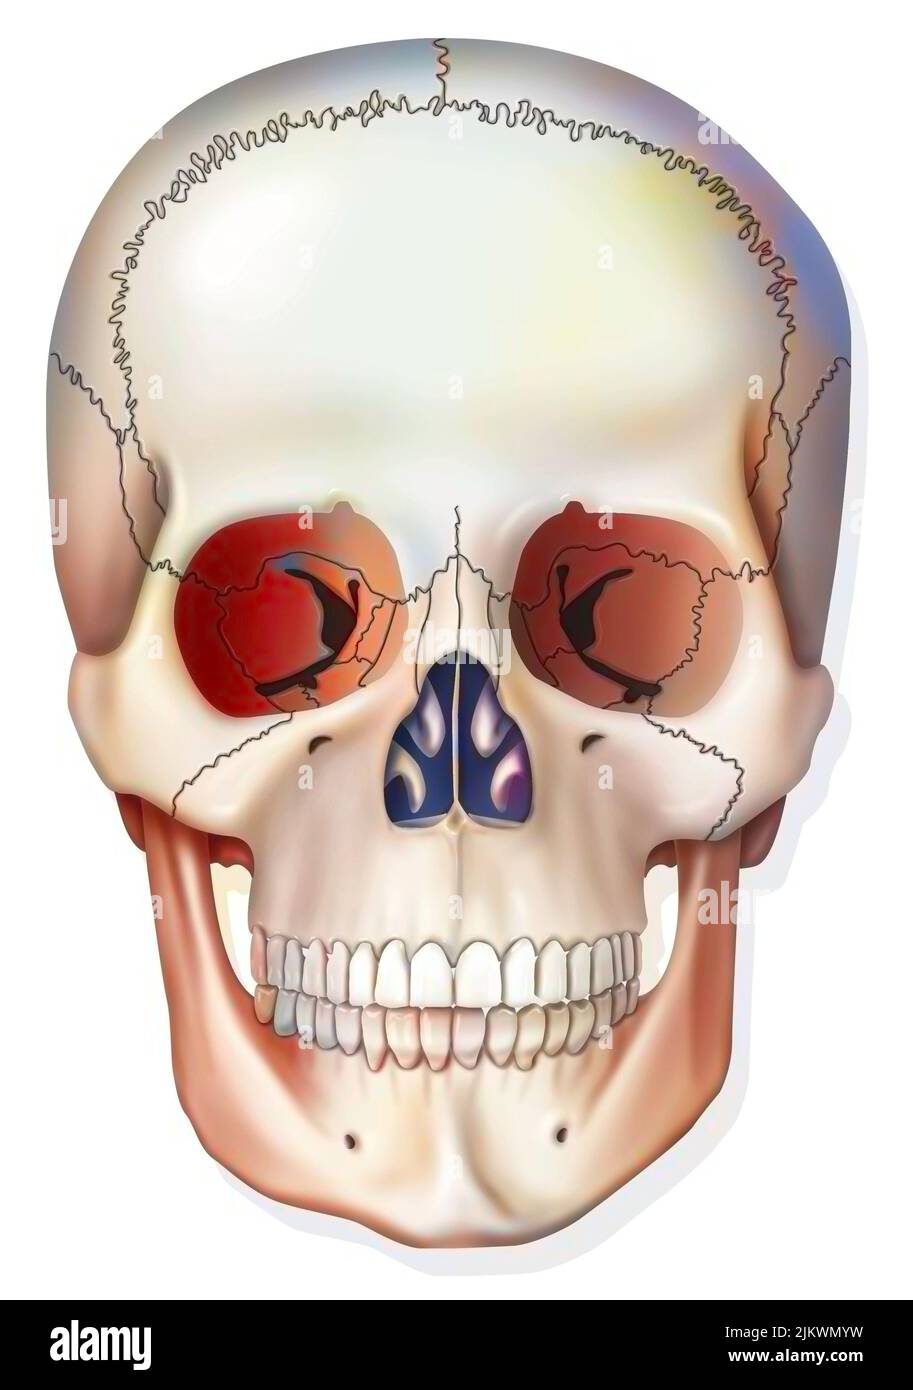 Système osseux : crâne humain avec mâchoire, prises oculaires Photo Stock -  Alamy